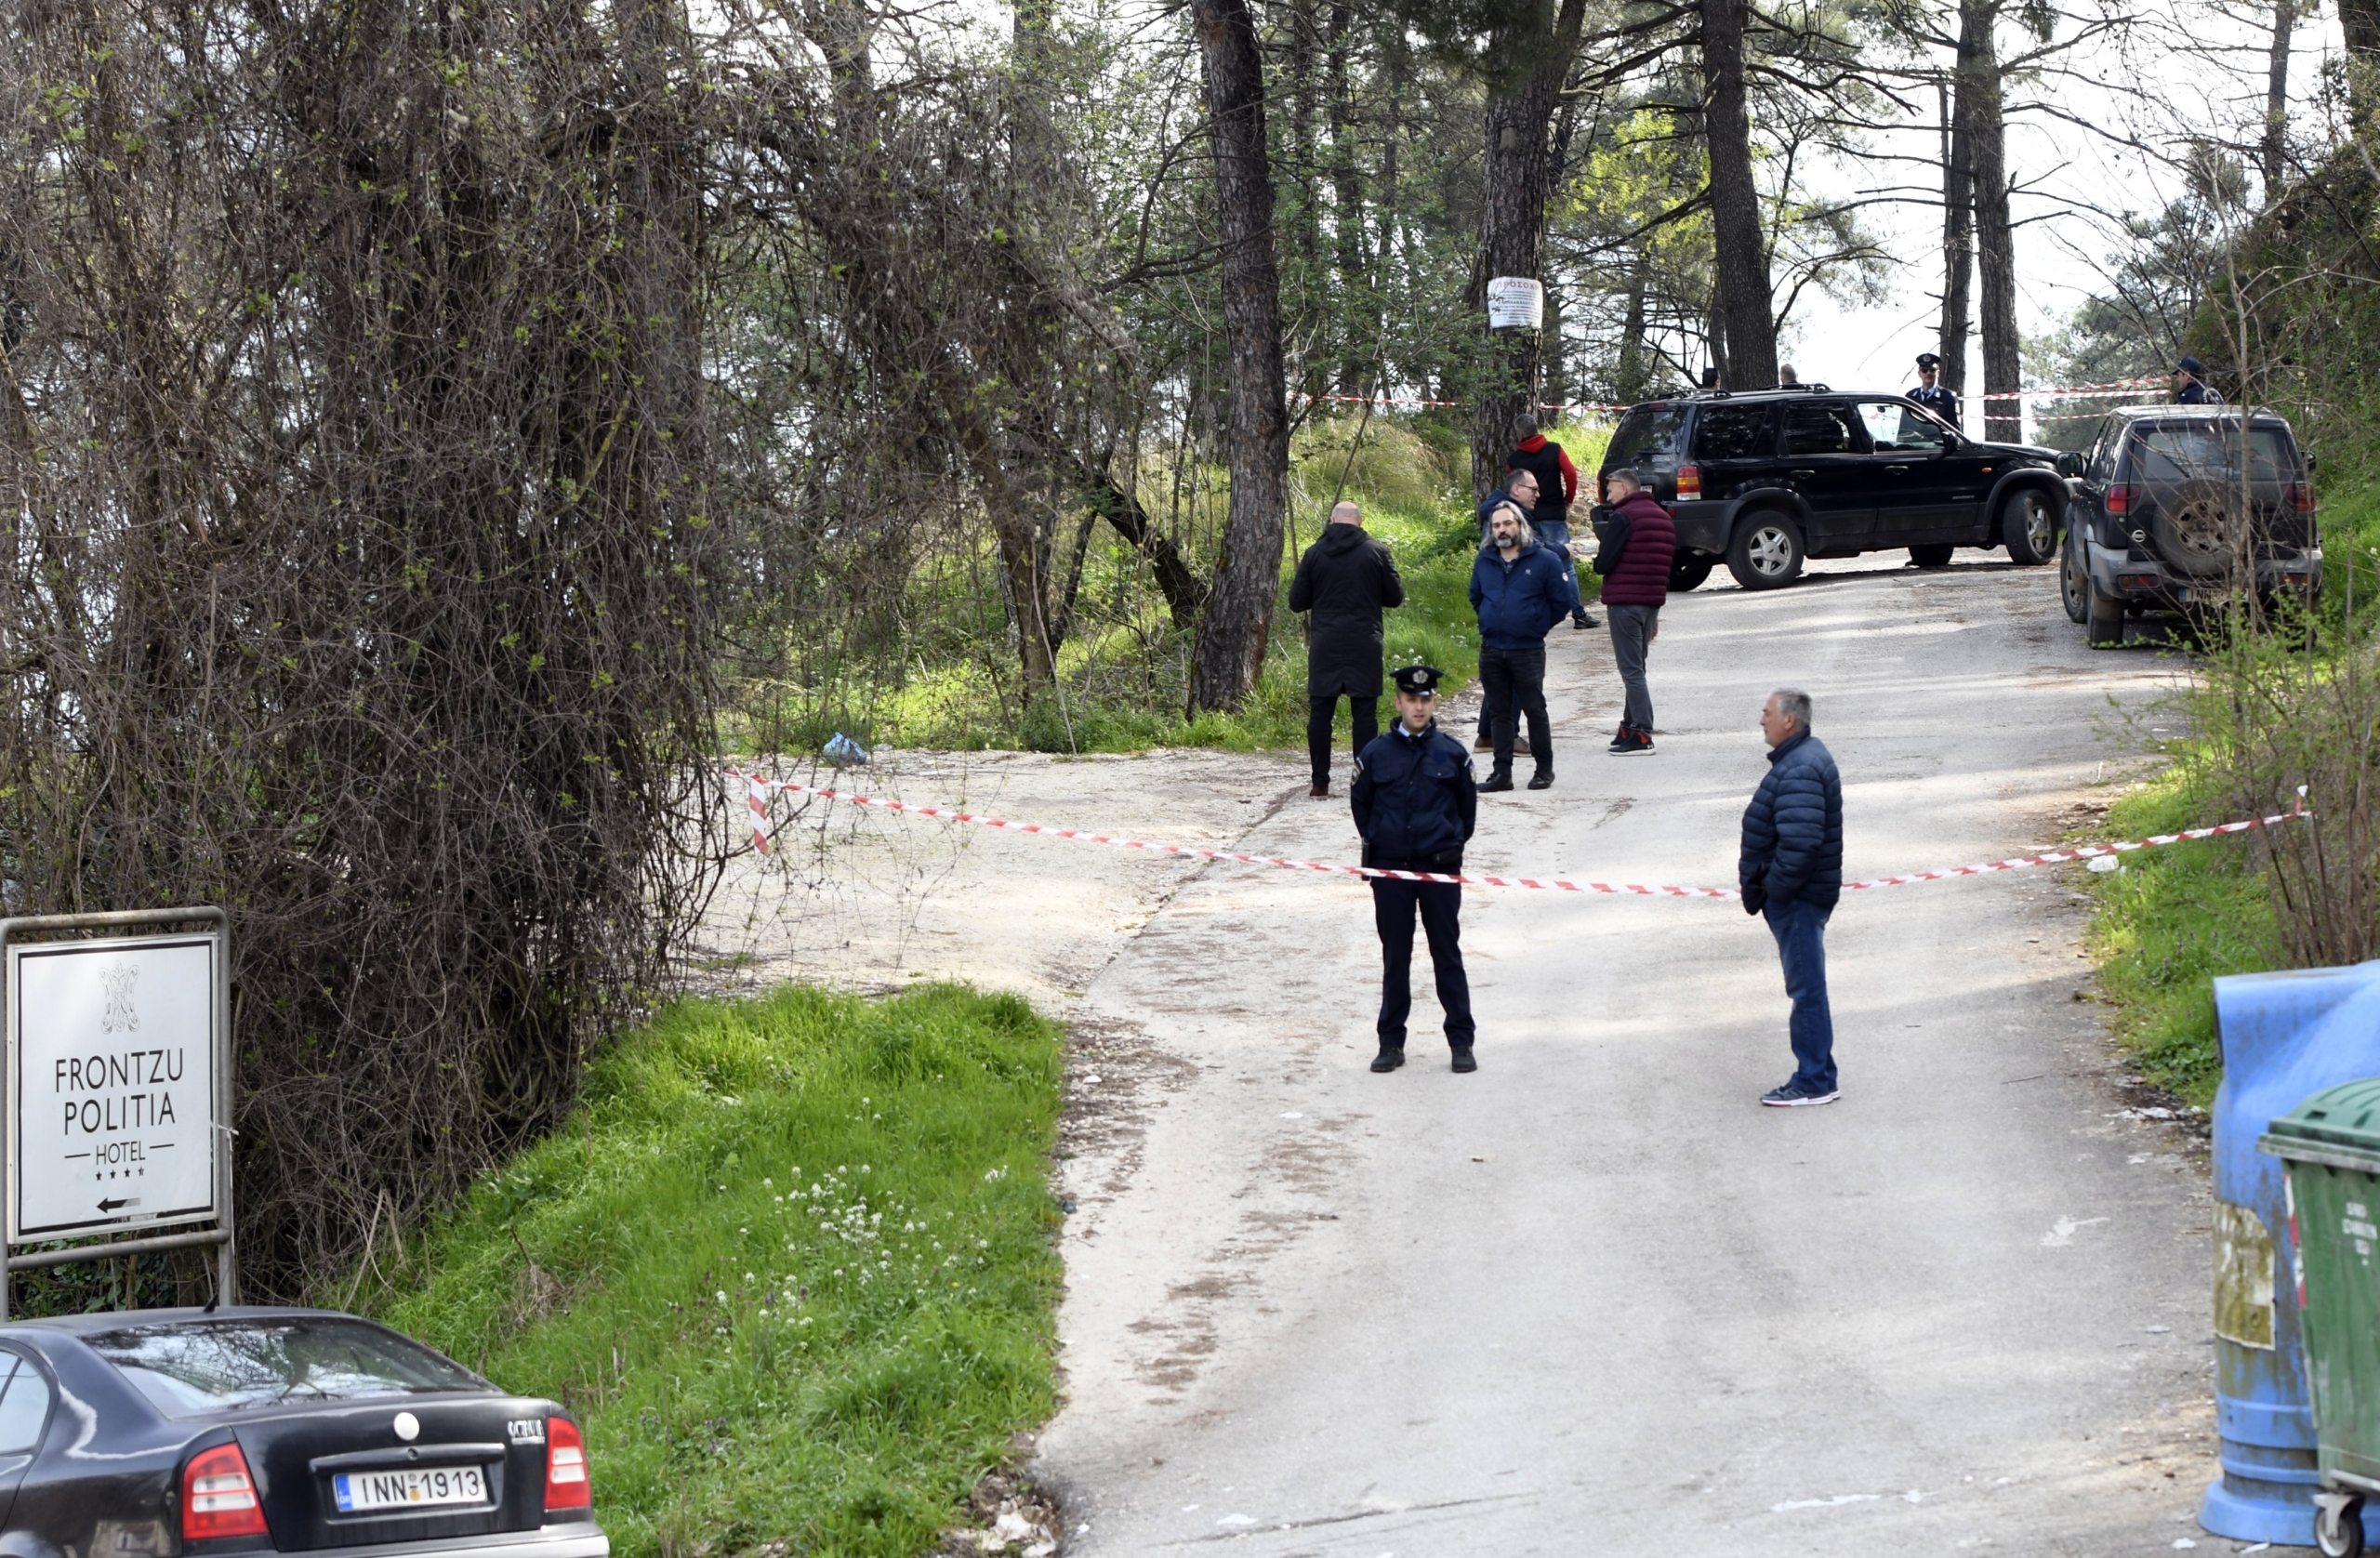 Συναγερμός έχει σημάνει στις αρχές στα Ιωάννινα μετά τον εντοπισμό της σορού ενός άνδρα σε δασύλλιο, στον λόφο Φρόντζου